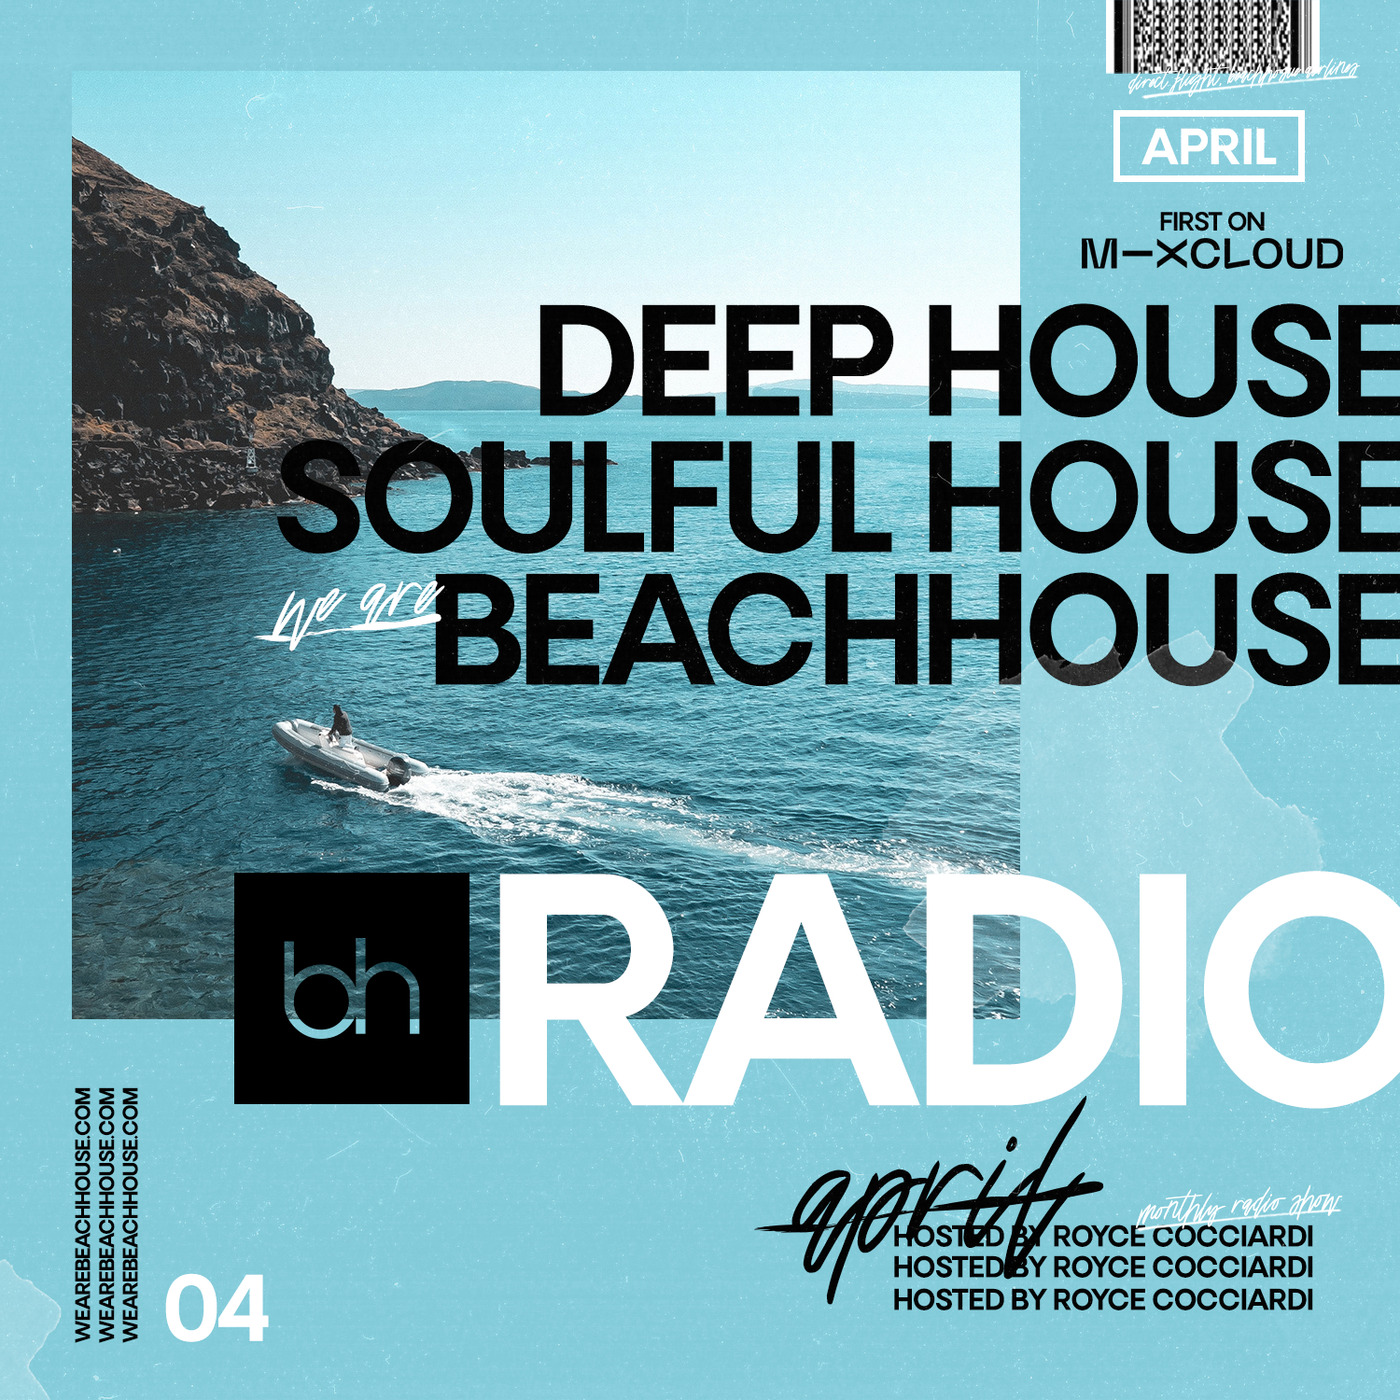 Beachhouse RADIO - April 2020 - Episode 04